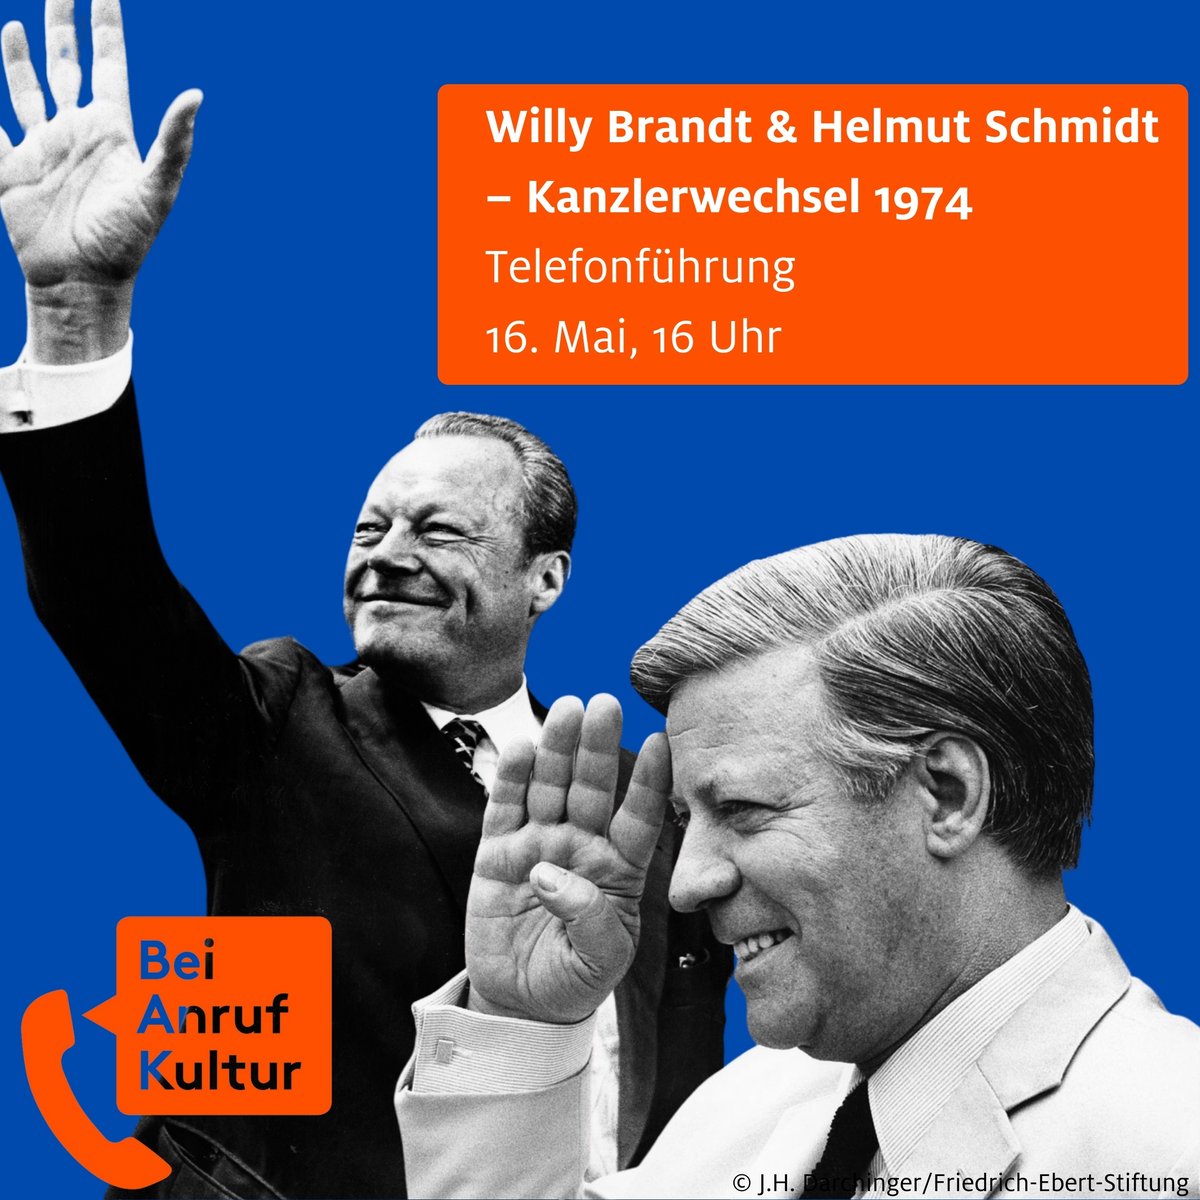 Am 6. Mai 1974 trat Willy Brandt als Bundeskanzler zurück. Helmut Schmidt wurde am 16. Mai zu seinem Nachfolger gewählt. Zum 50. Jahrestag lädt #BeiAnrufKultur zu einer Sonderführung aus dem Willy-Brandt-Haus Lübeck und der @BKHS_Stiftung ein. Buchen unter beianrufkultur.de